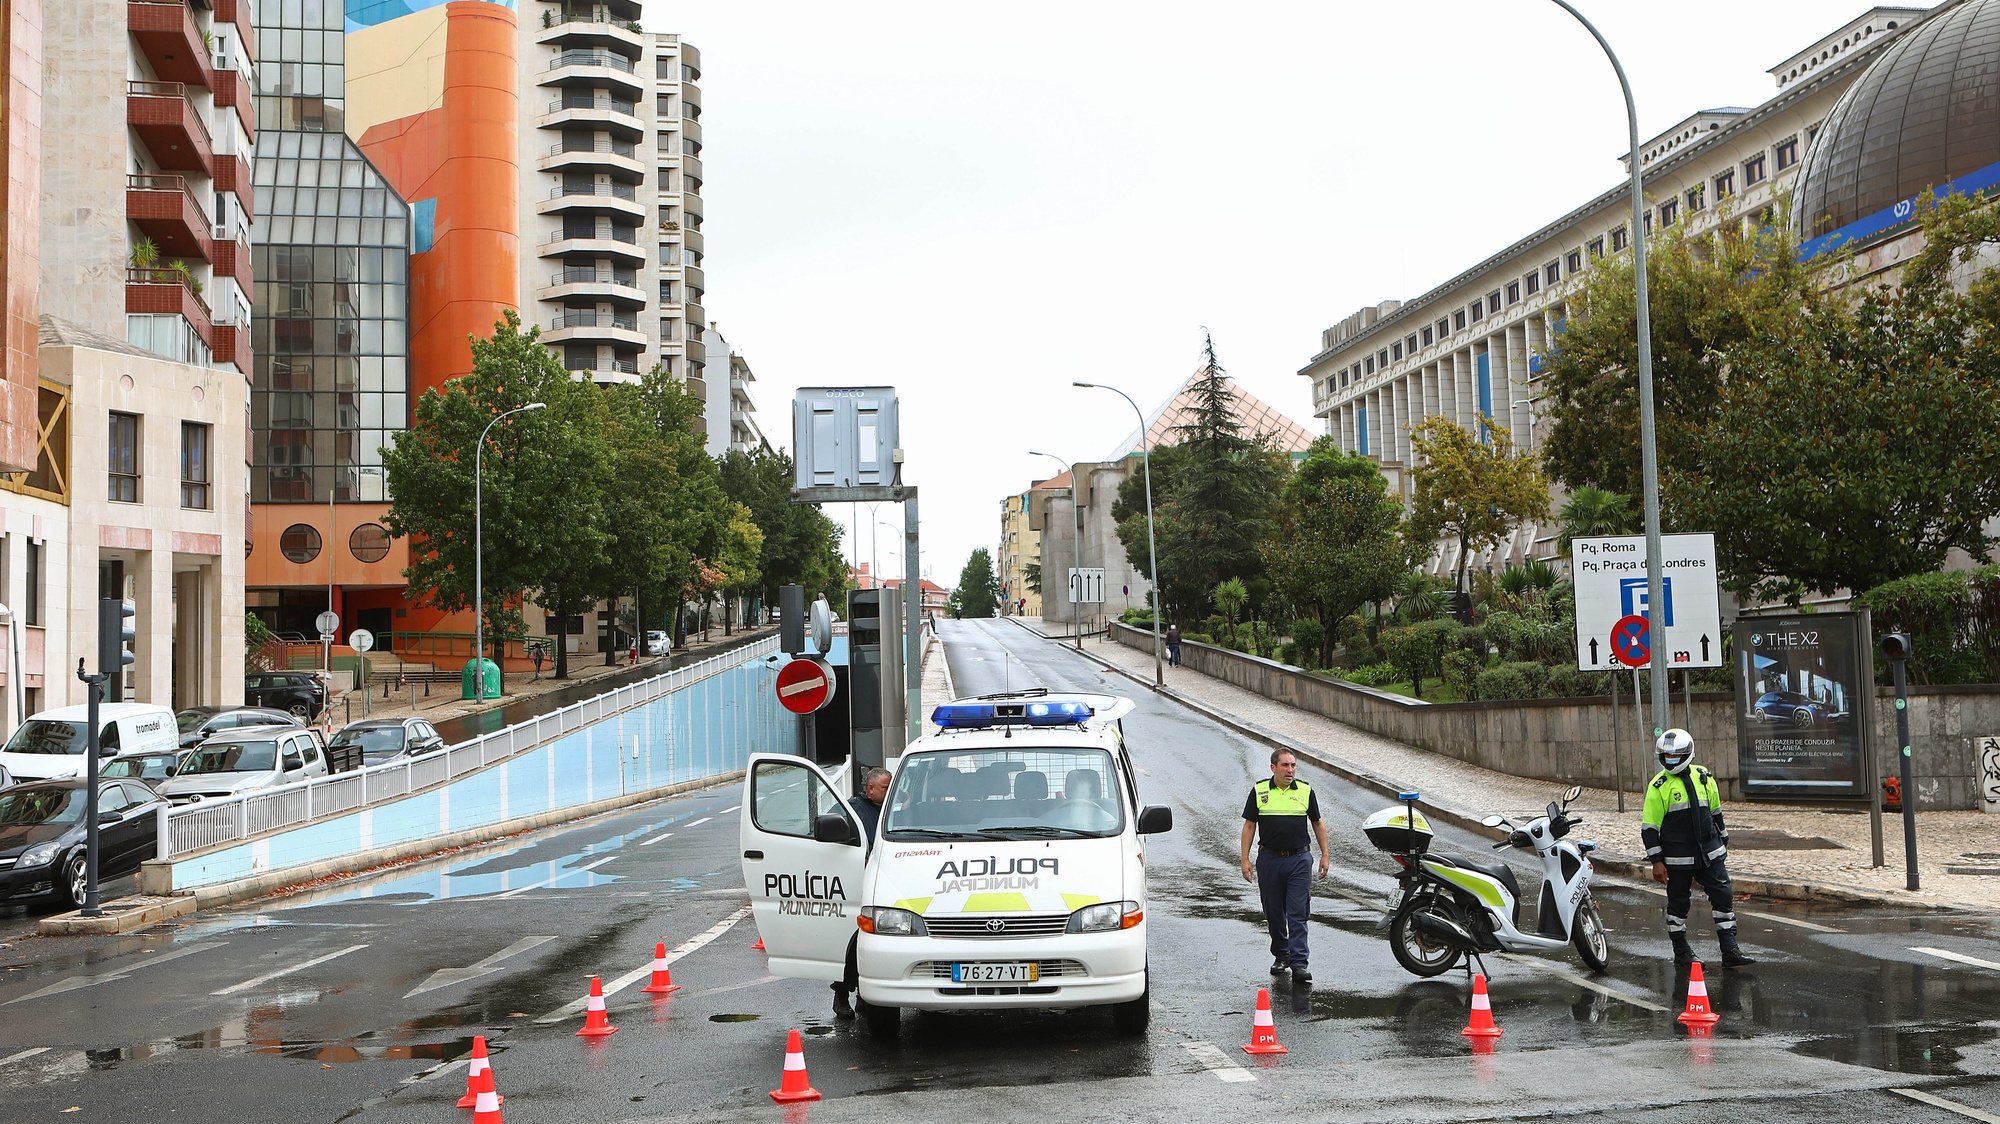 Agentes da Polícia Municipal controlam o trânsito à entrada do túnel da Avenida João XXI, após um incêndio provocado por um curto-circuito, em Lisboa, 18 de setembro de 2020. ANTÓNIO PEDRO SANTOS/LUSA